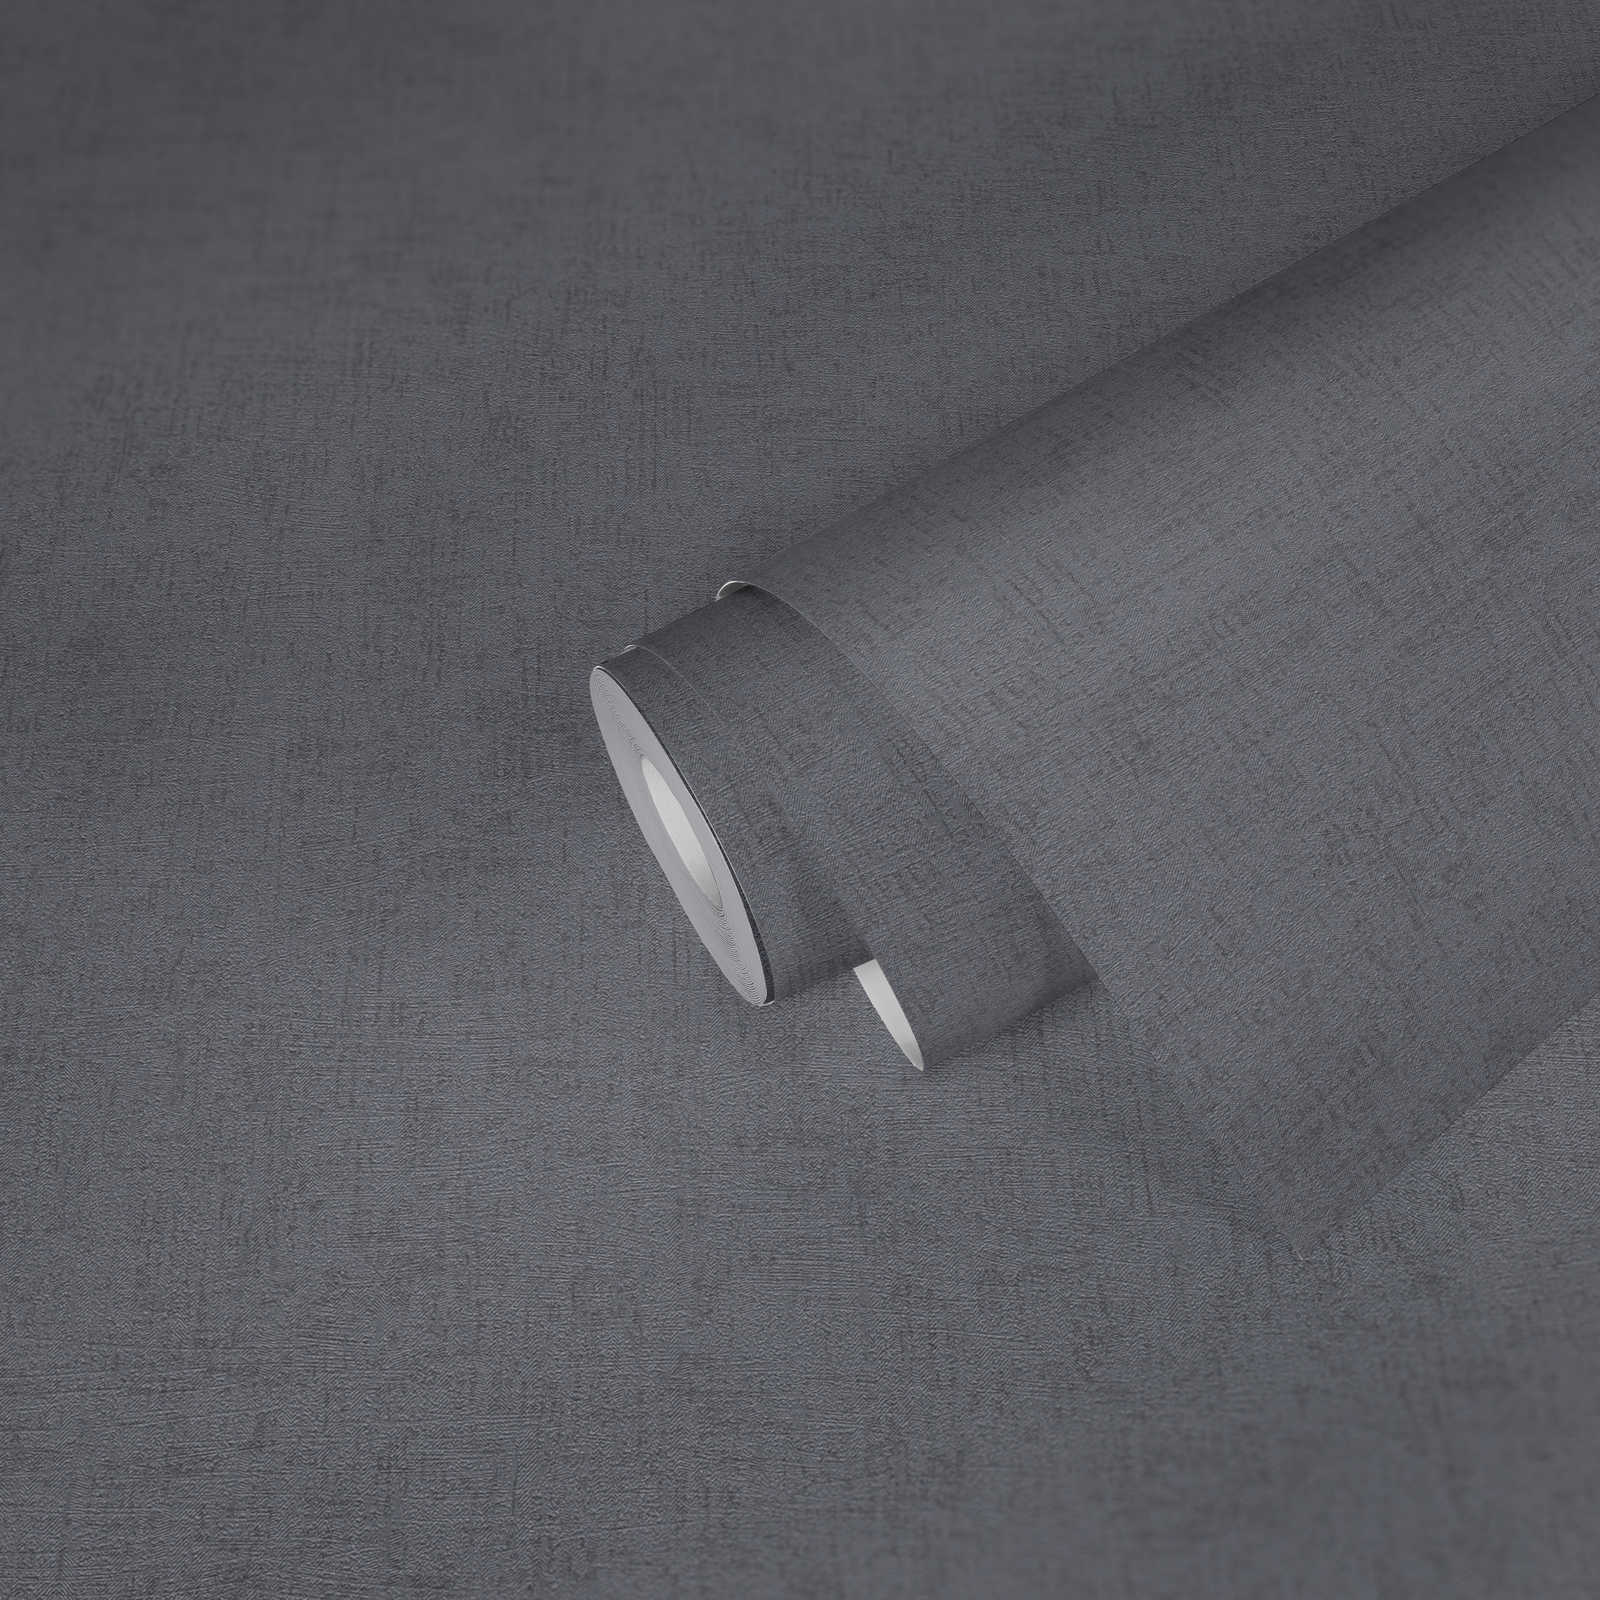             Carta da parati liscia grigio acciaio con struttura ed effetto lucido - grigio, metallizzato
        